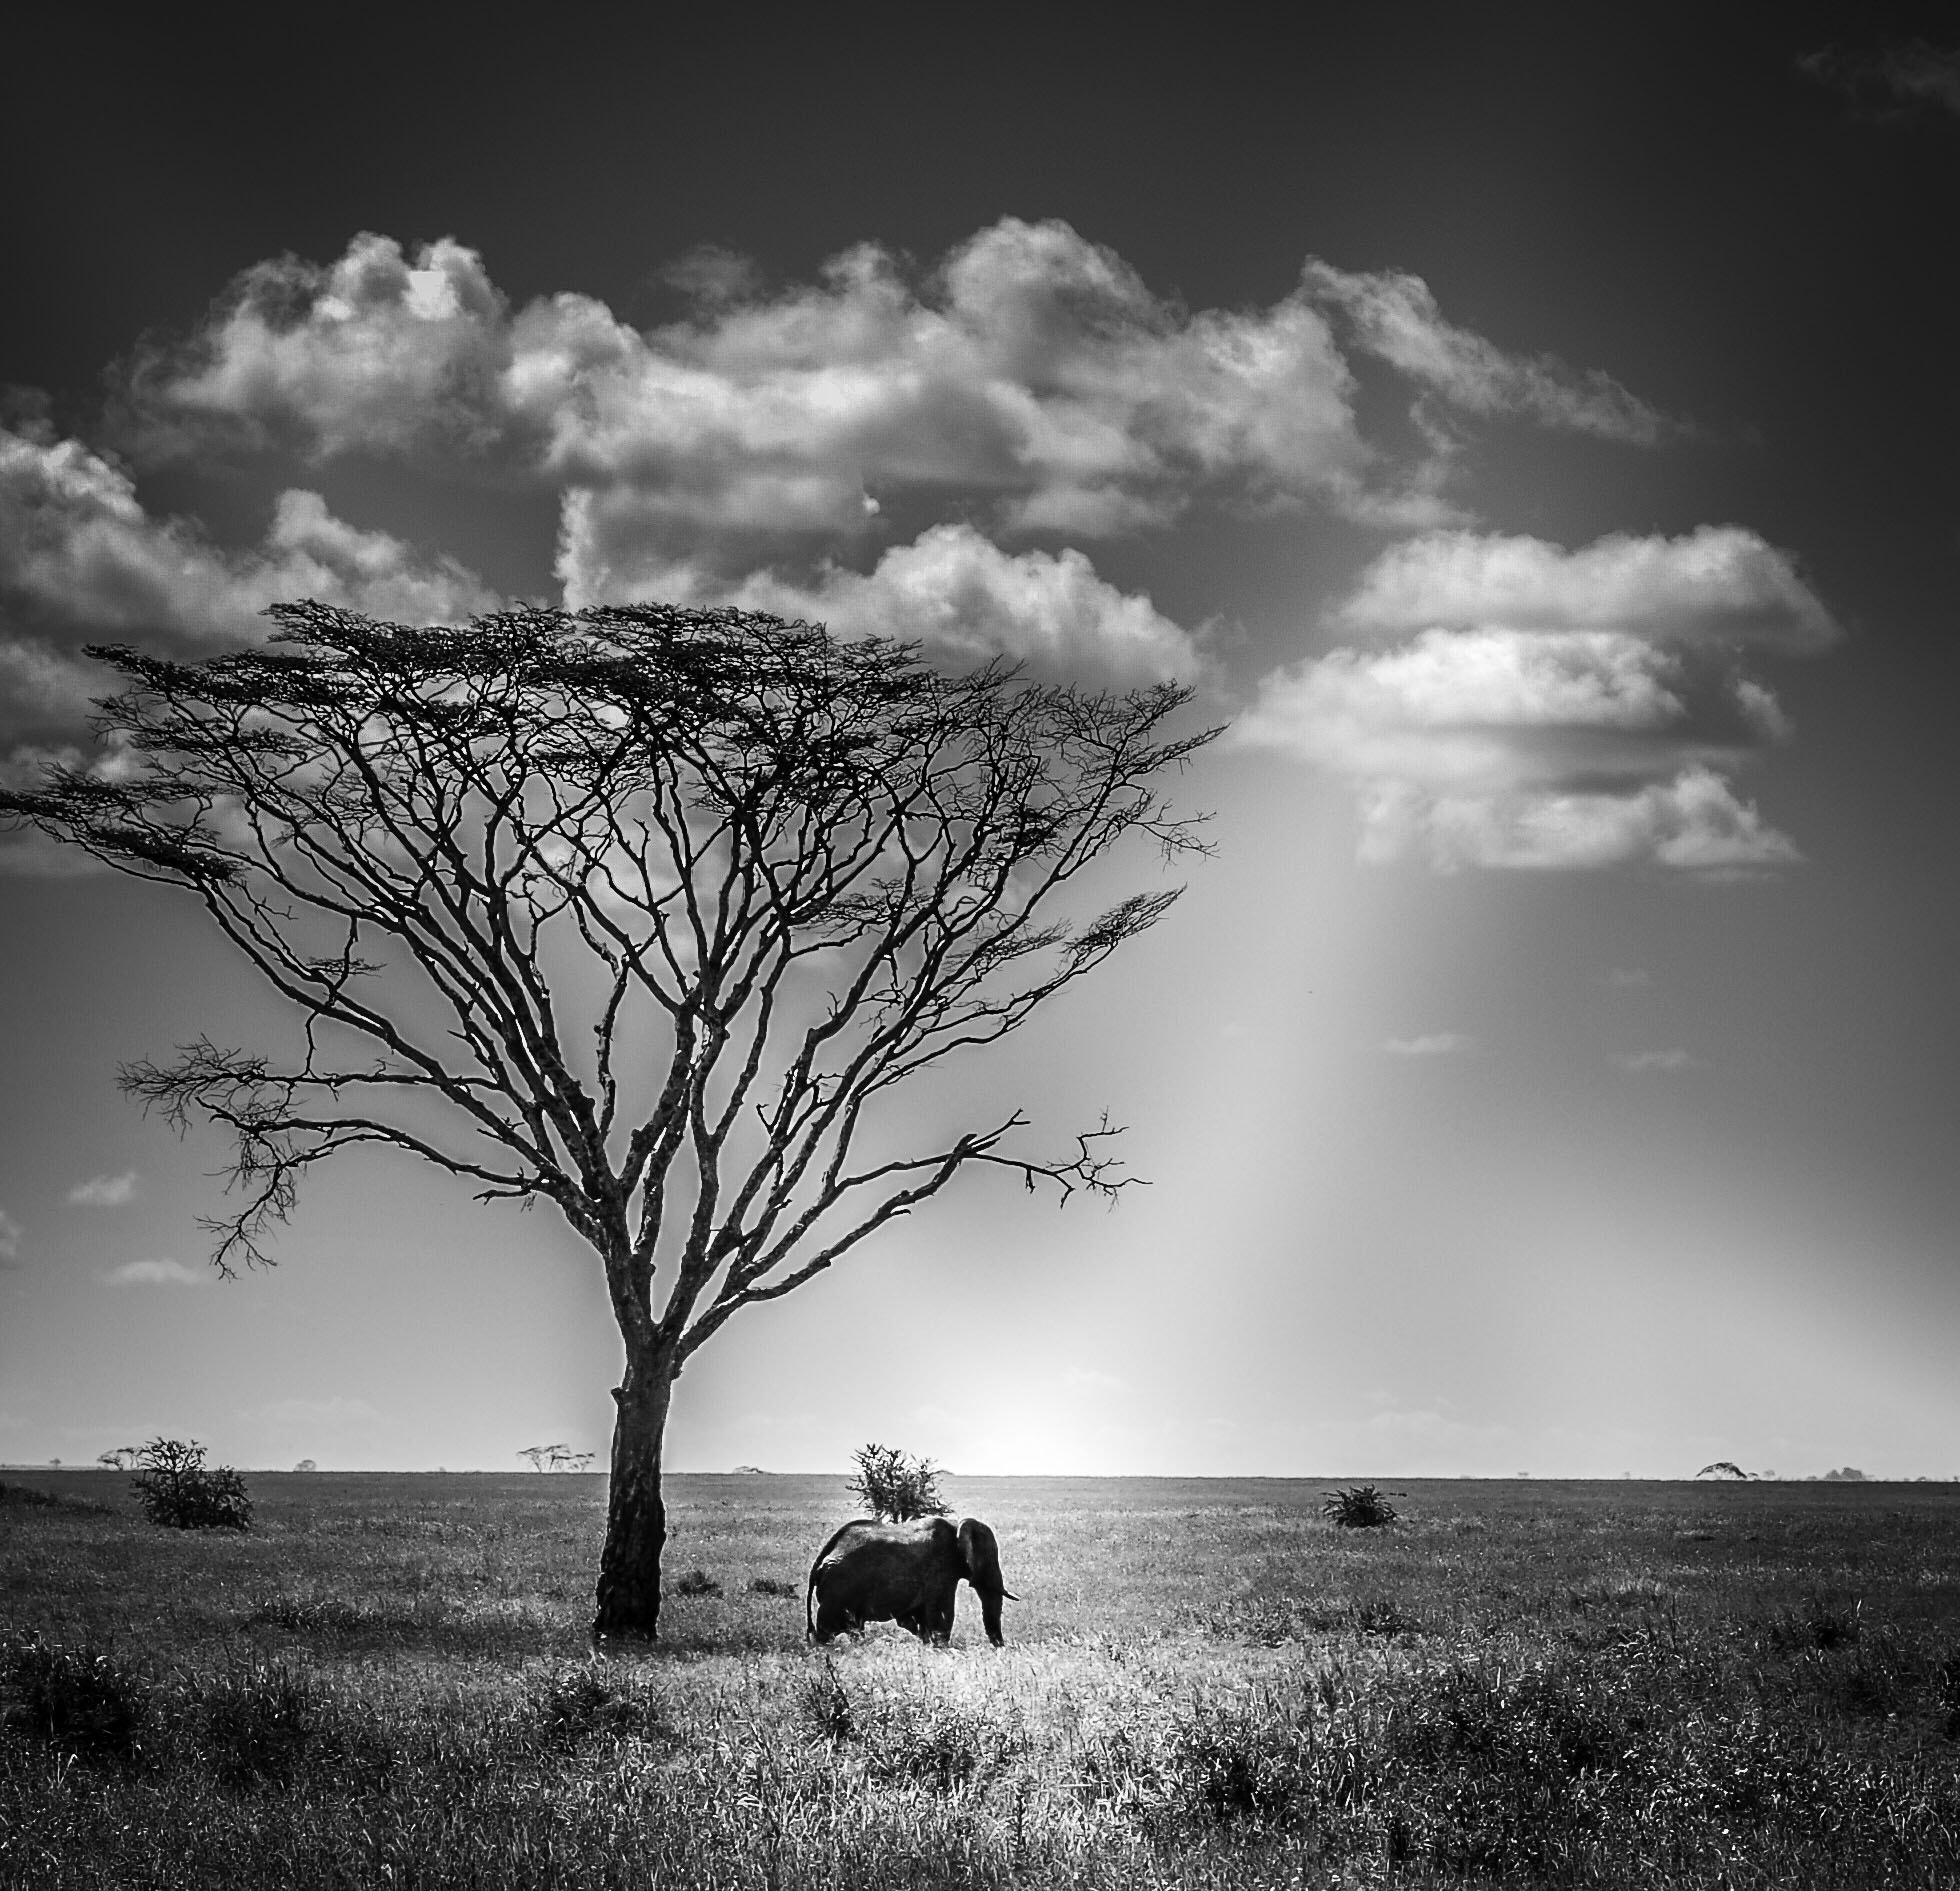 Nikon D50 + AF Zoom-Nikkor 28-80mm f/3.3-5.6G sample photo. Tanzania landscape photography